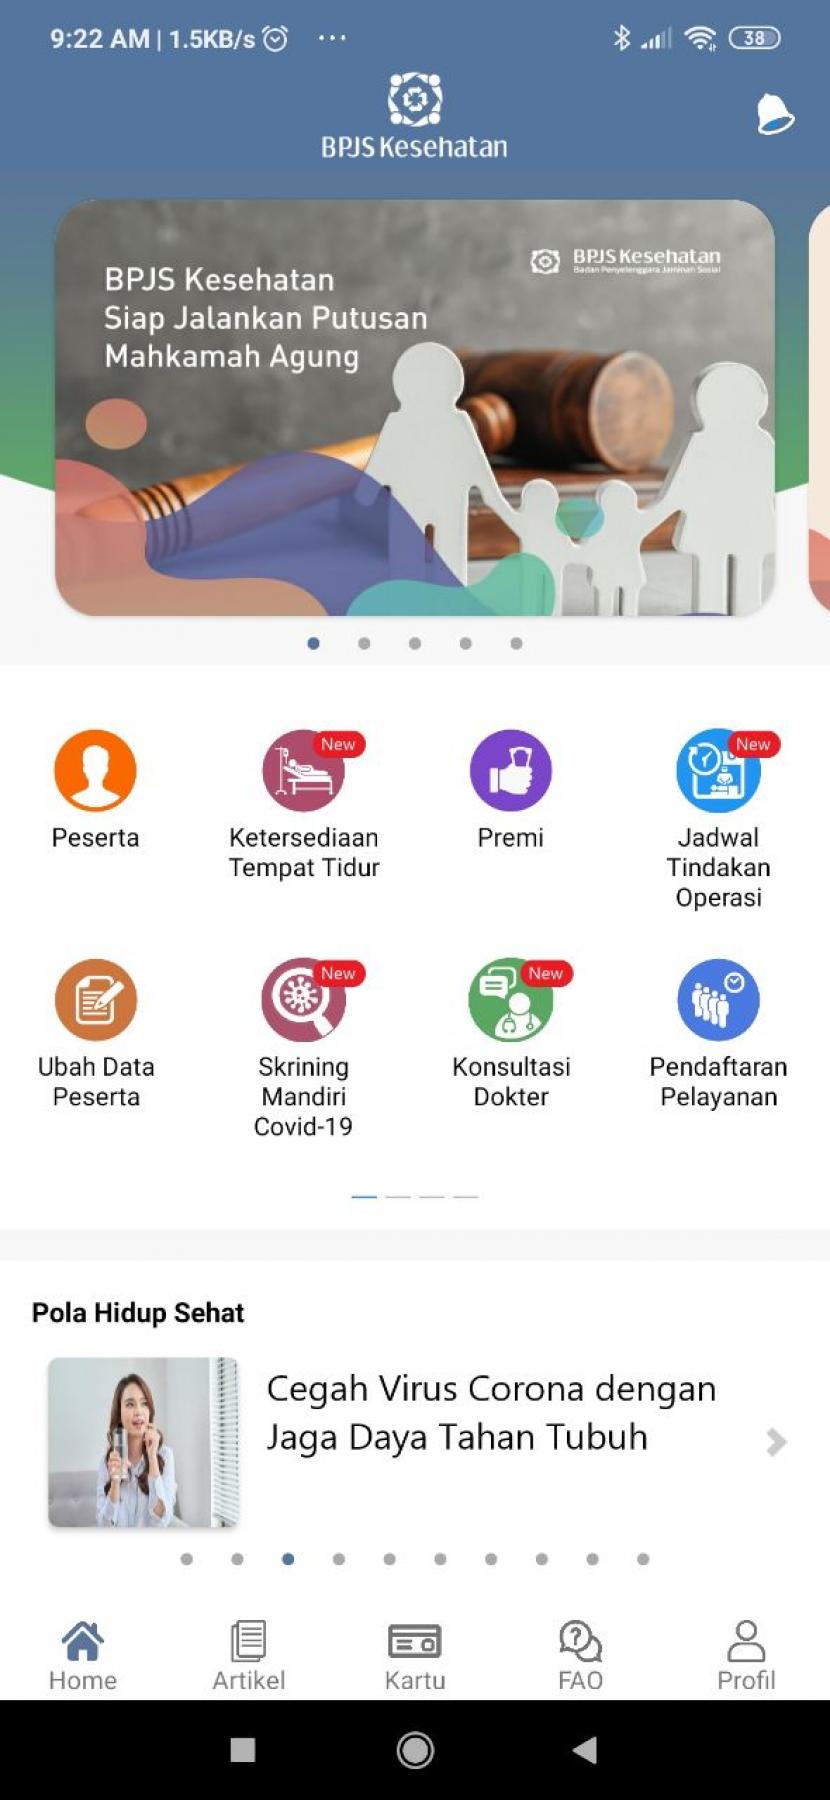 Bpjs Pengguna Mobile Jkn Bisa Screening Mandiri Covid Republika Online